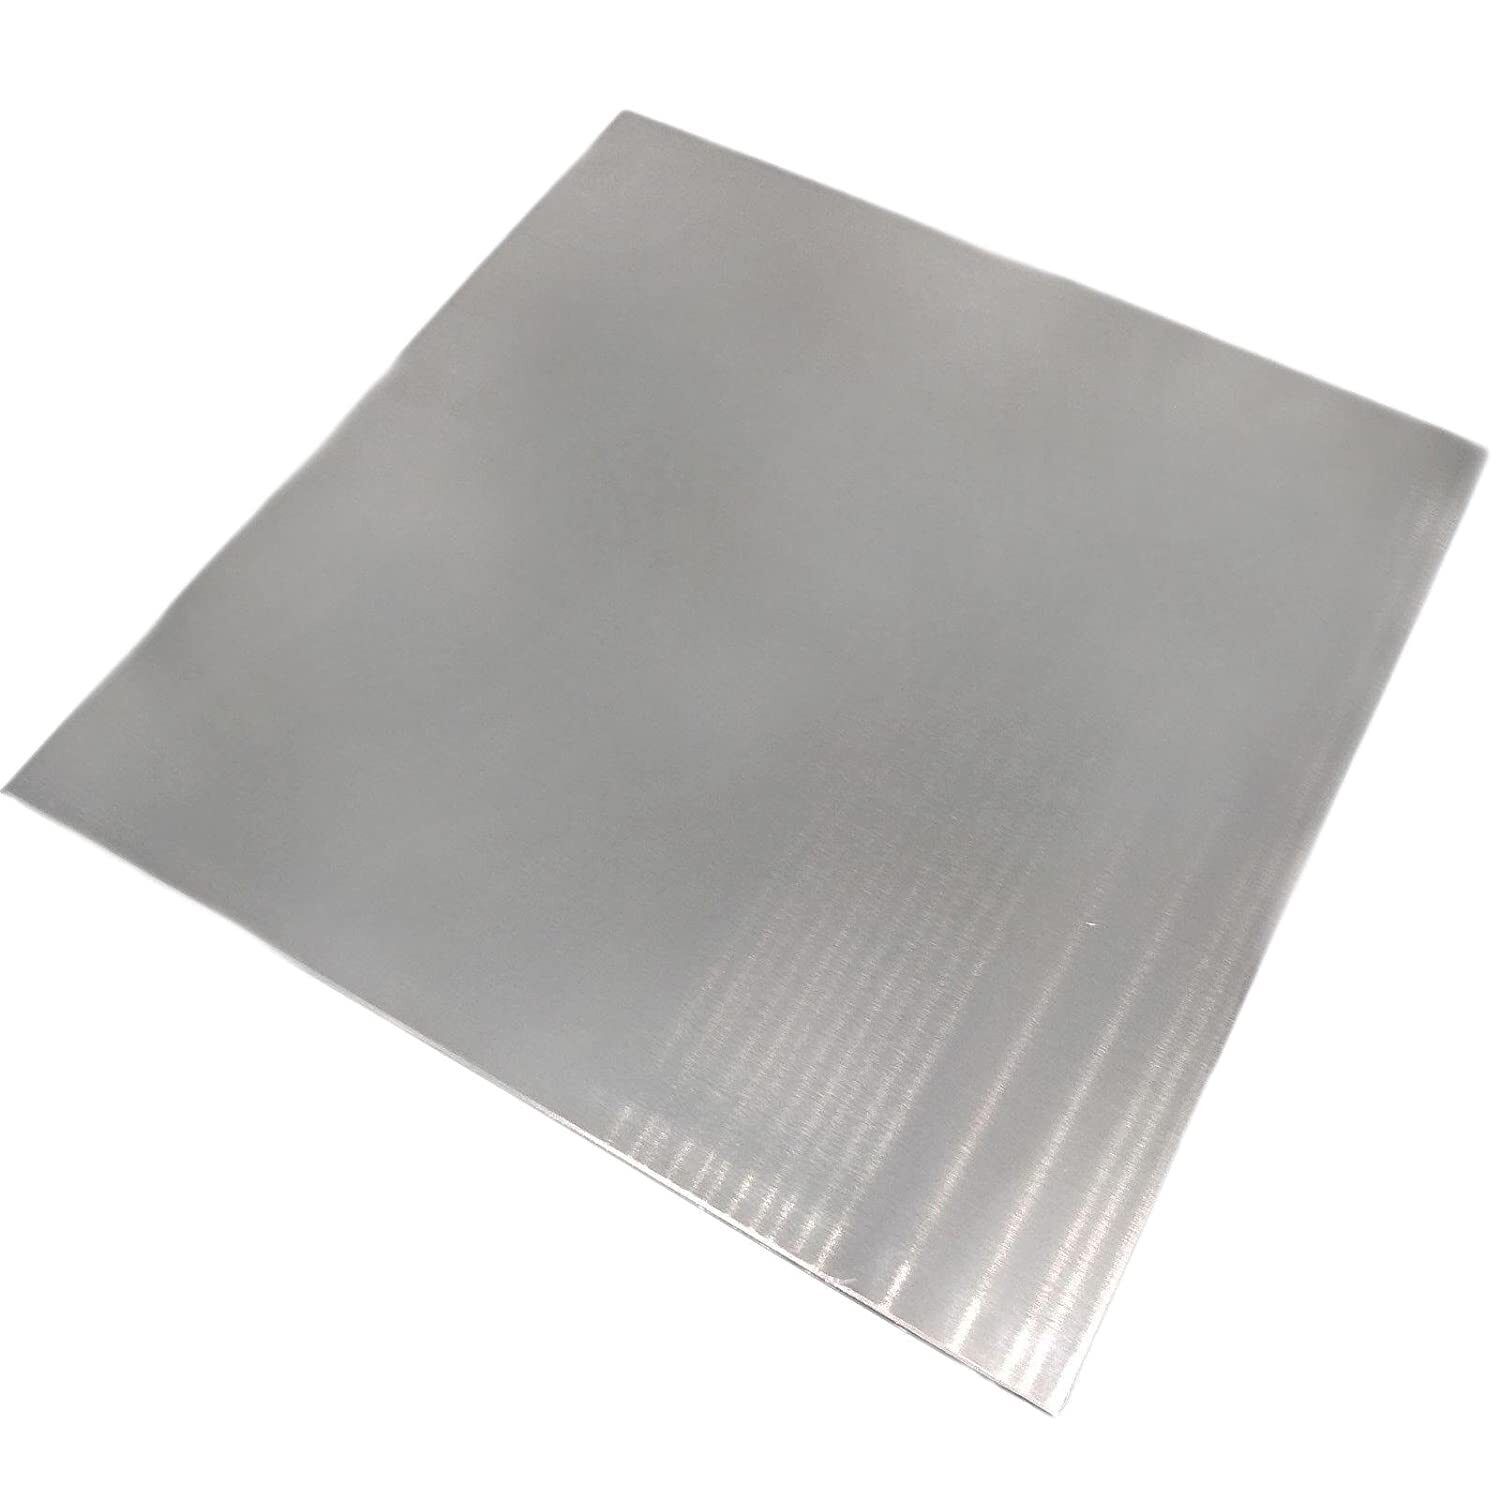 Aluminum Plate